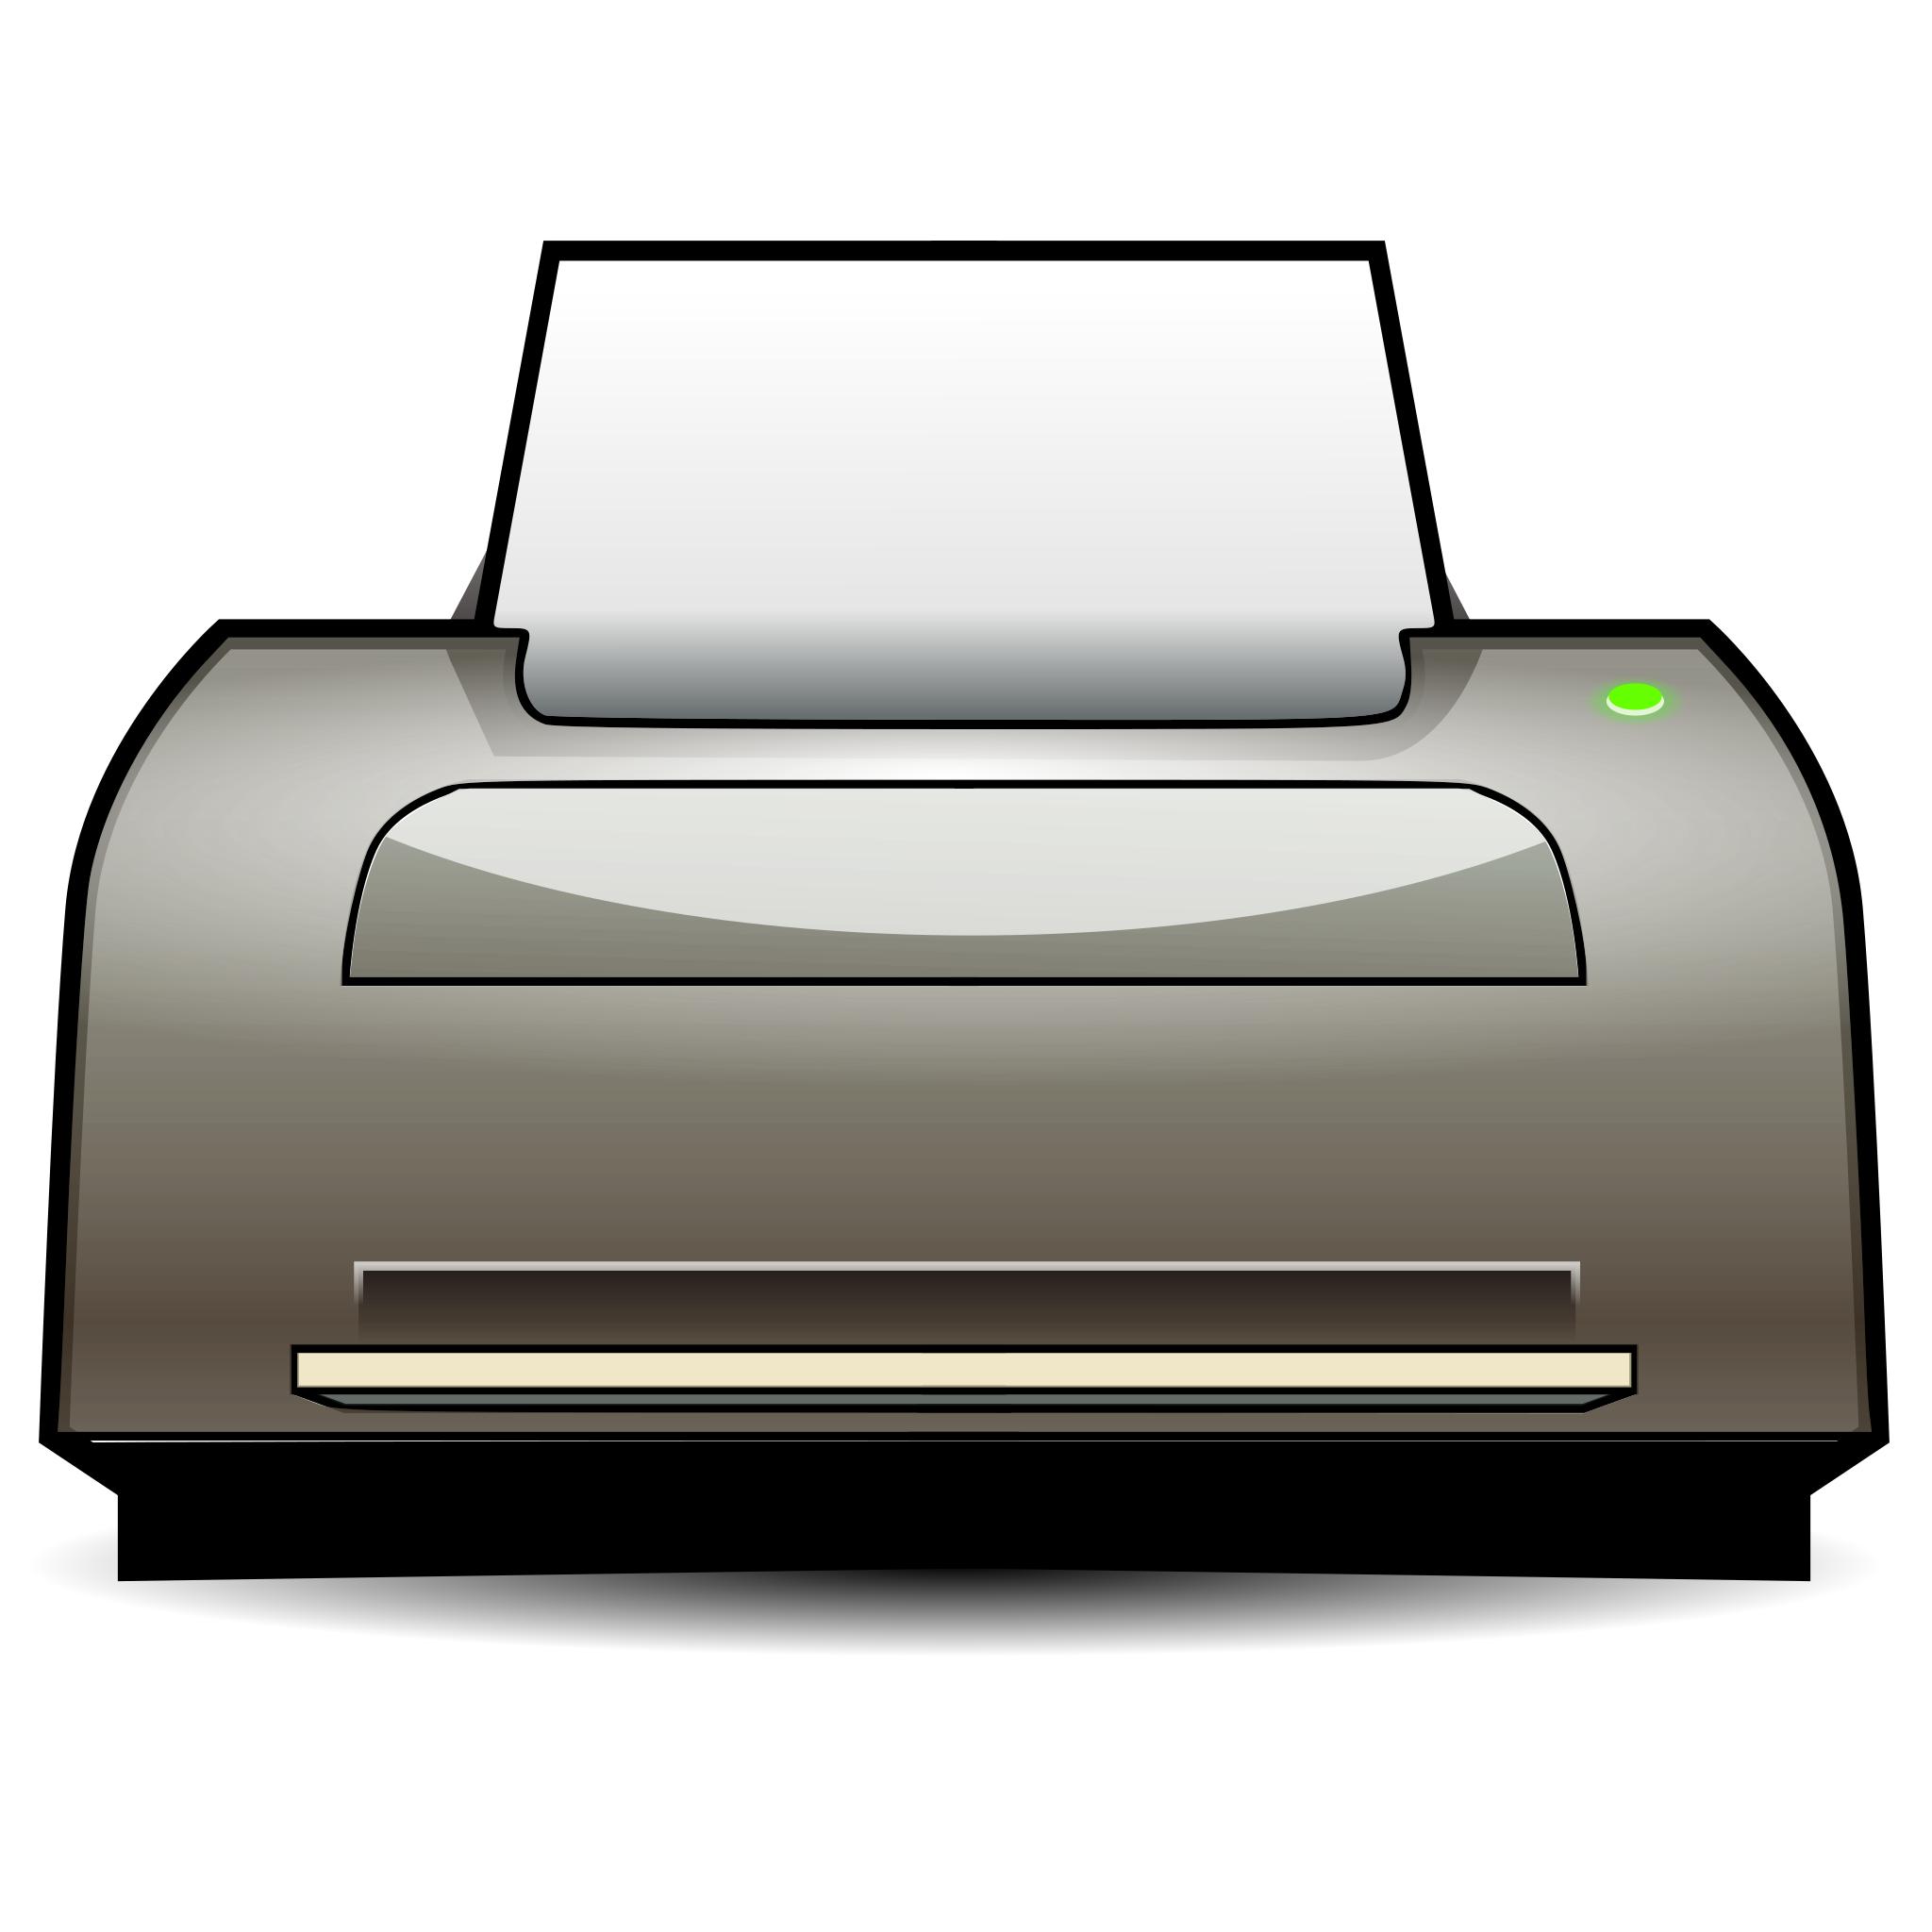 Принтер на прозрачном фоне